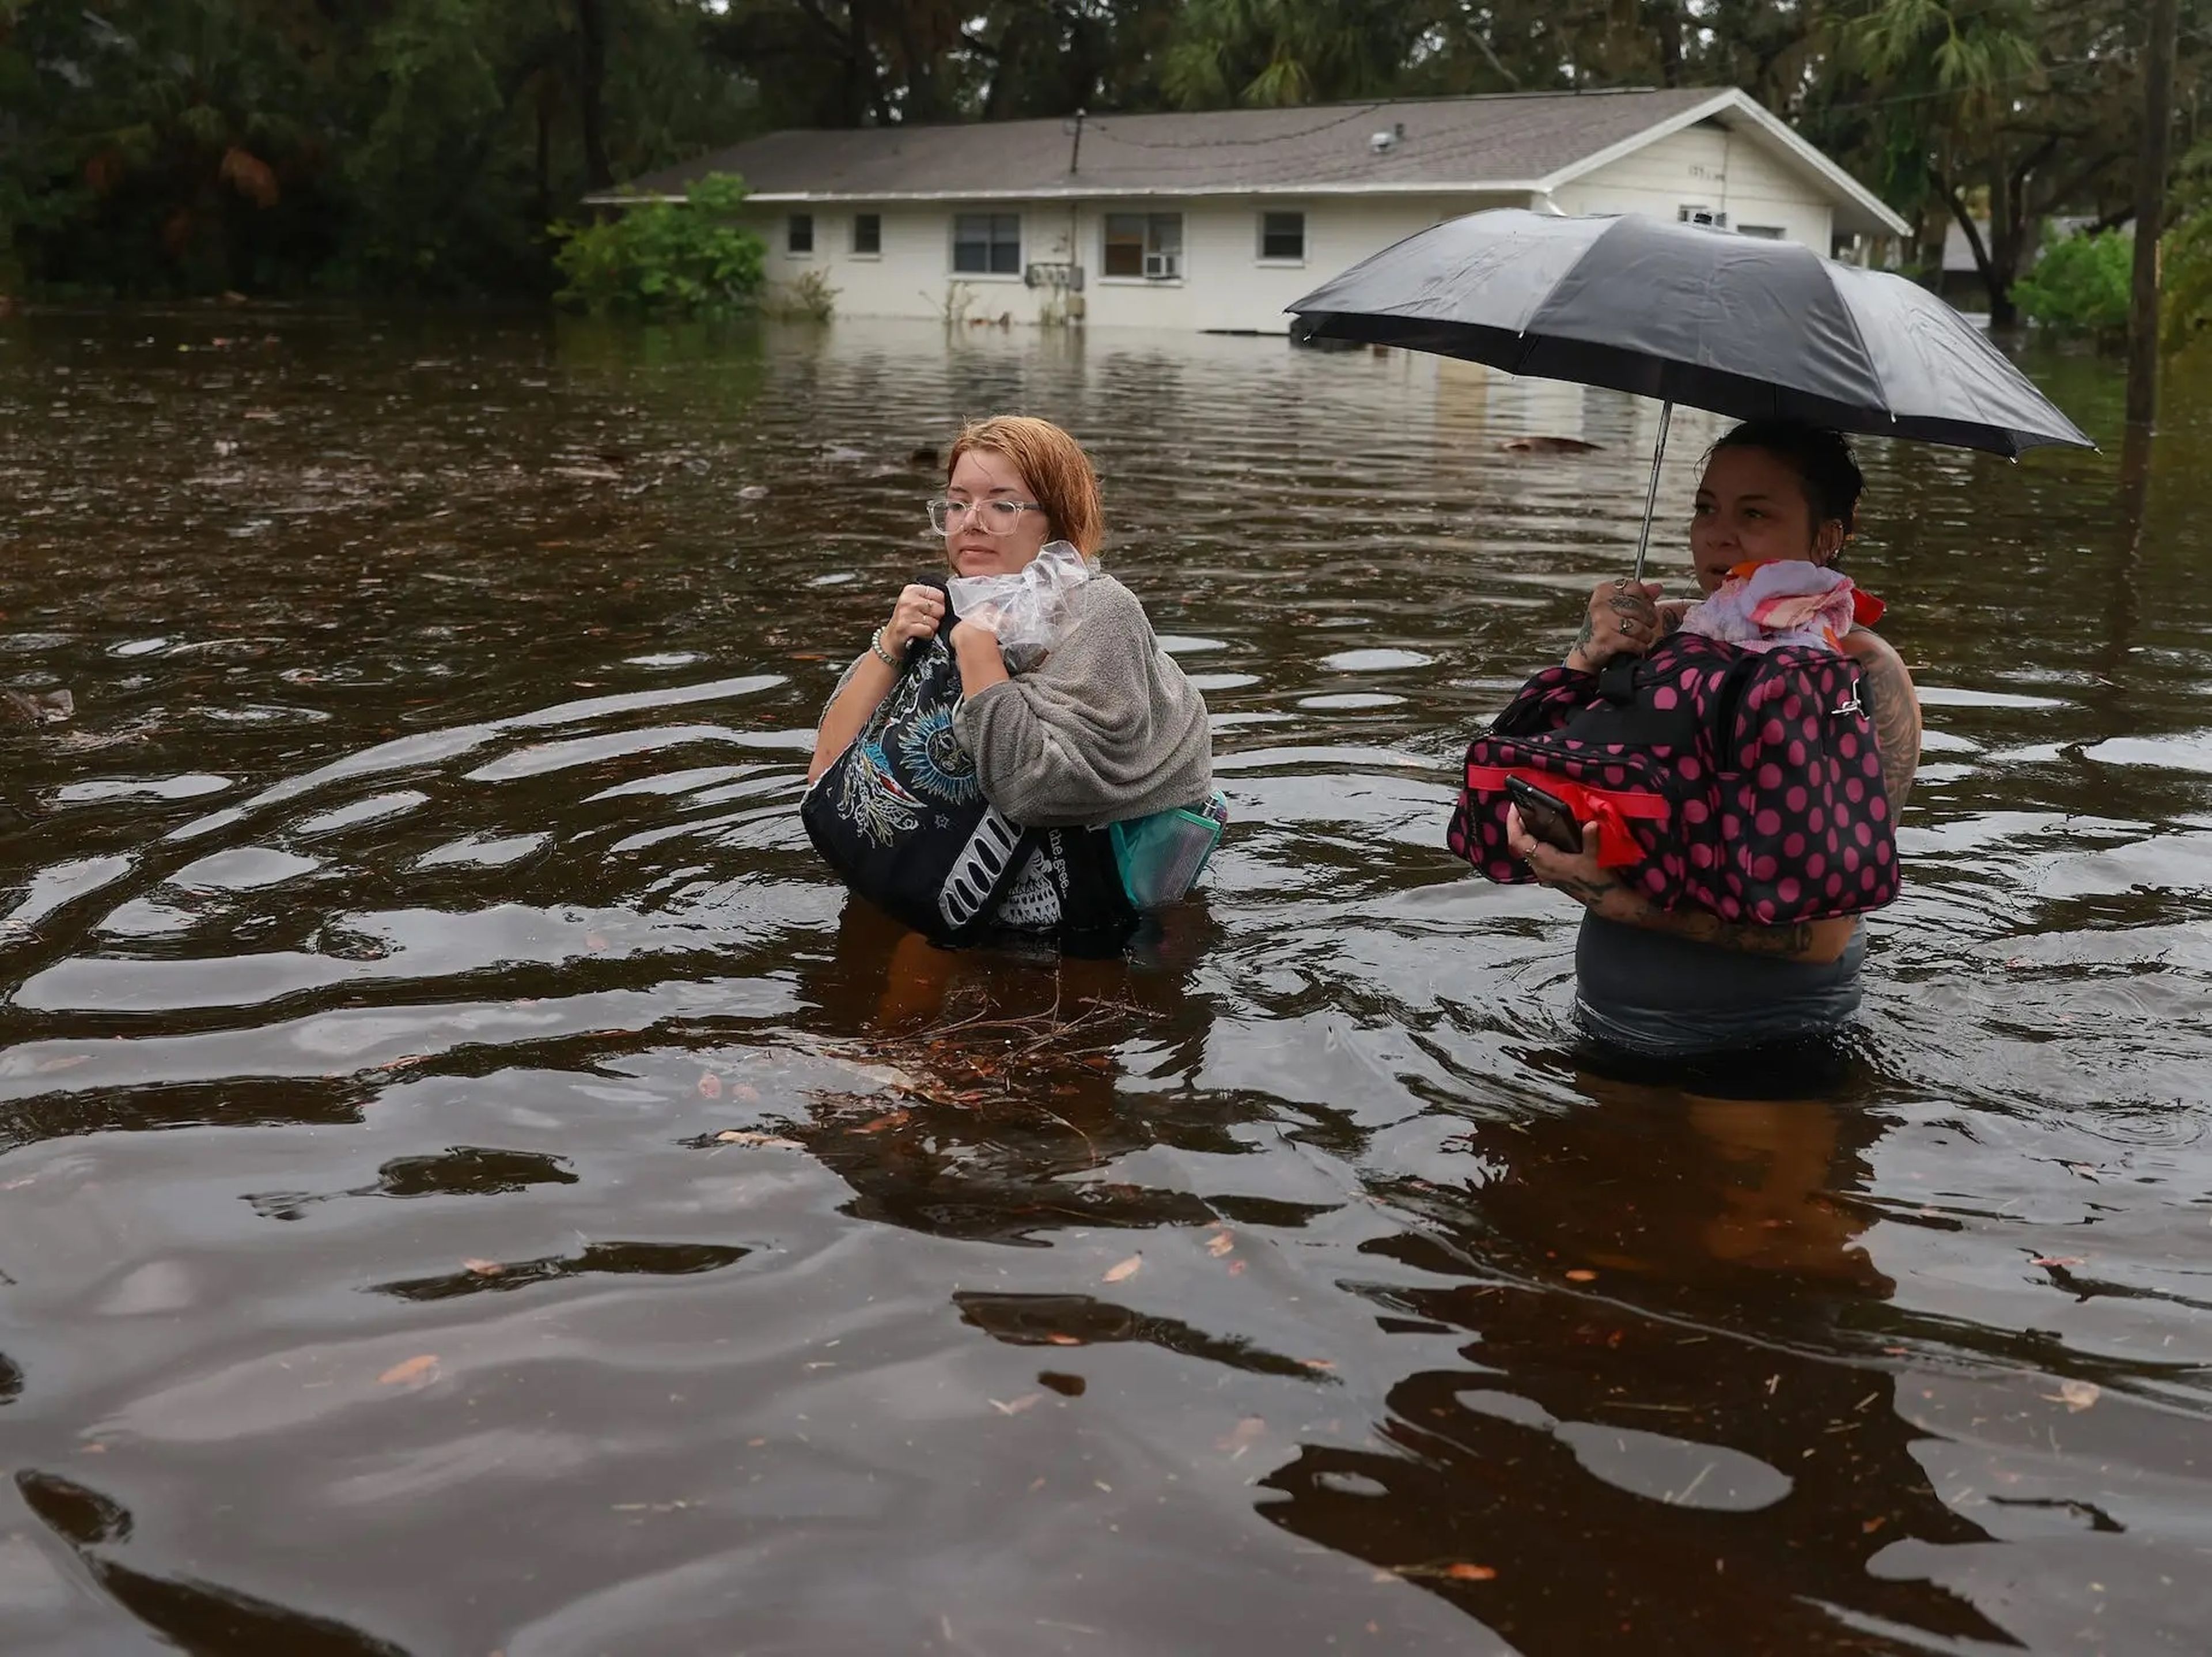 Los habitantes de Tarpon Springs (Florida, Estados Unidos) tuvieron que evacuar sus casas después de que el huracán Idalia inundara la zona durante el verano.